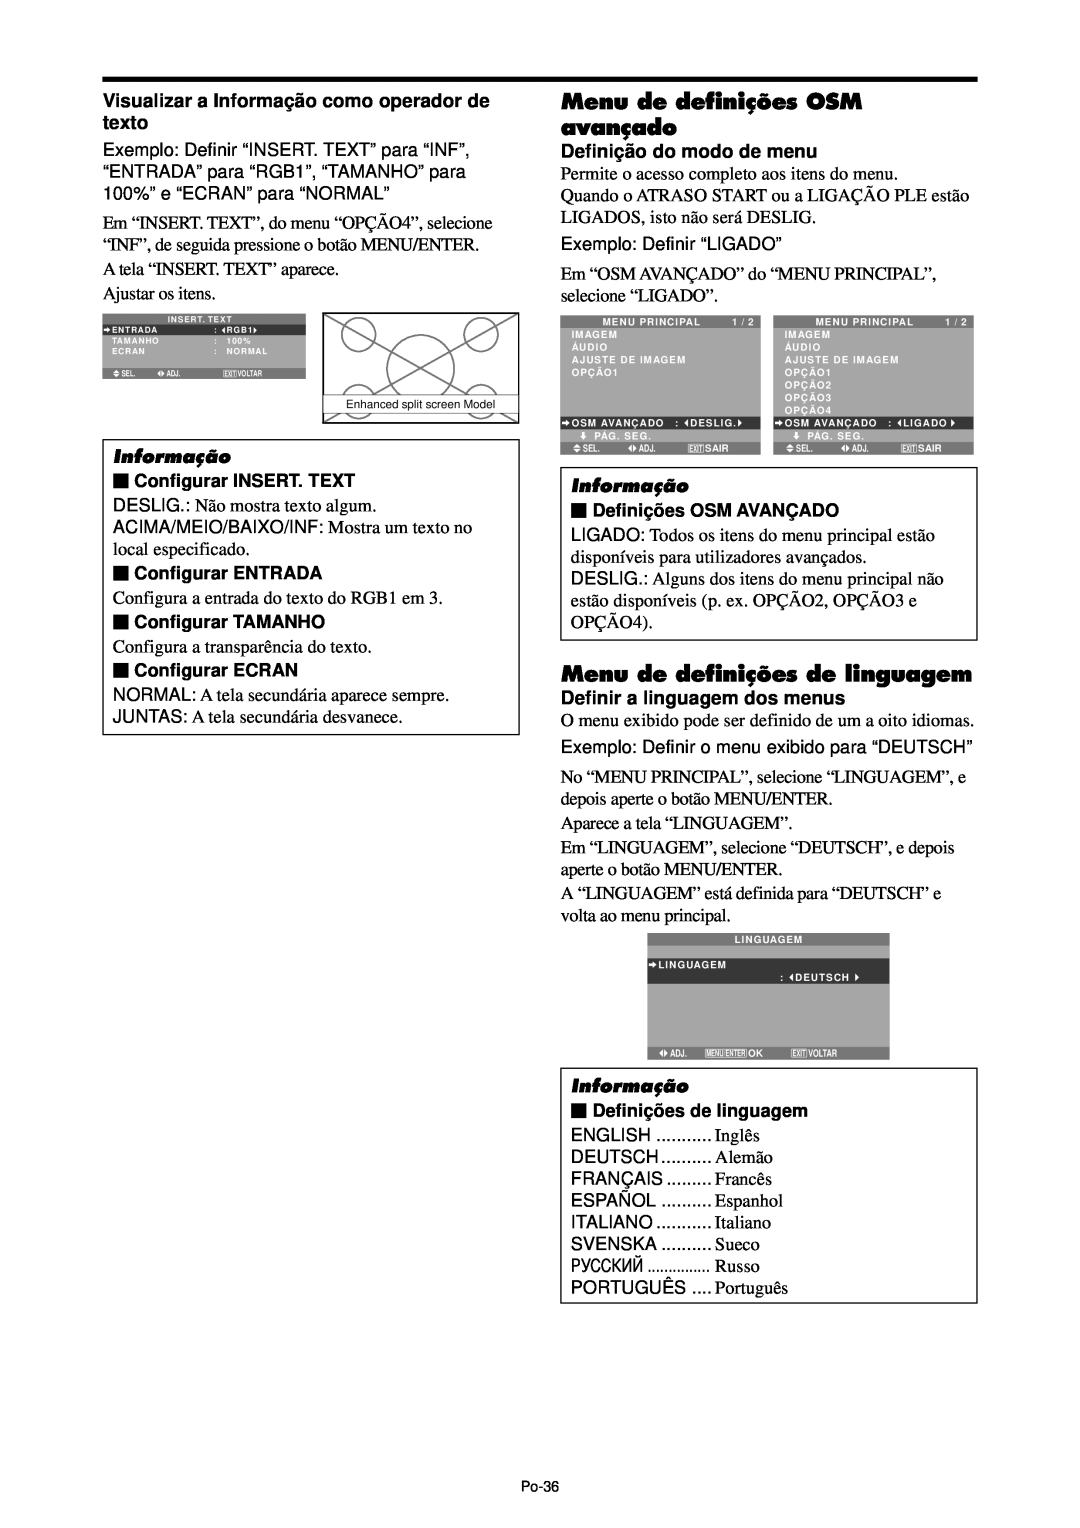 NEC PX-42XM4A Menu de definições OSM avançado, Menu de definições de linguagem, Definiçã o do modo de menu, Informação 